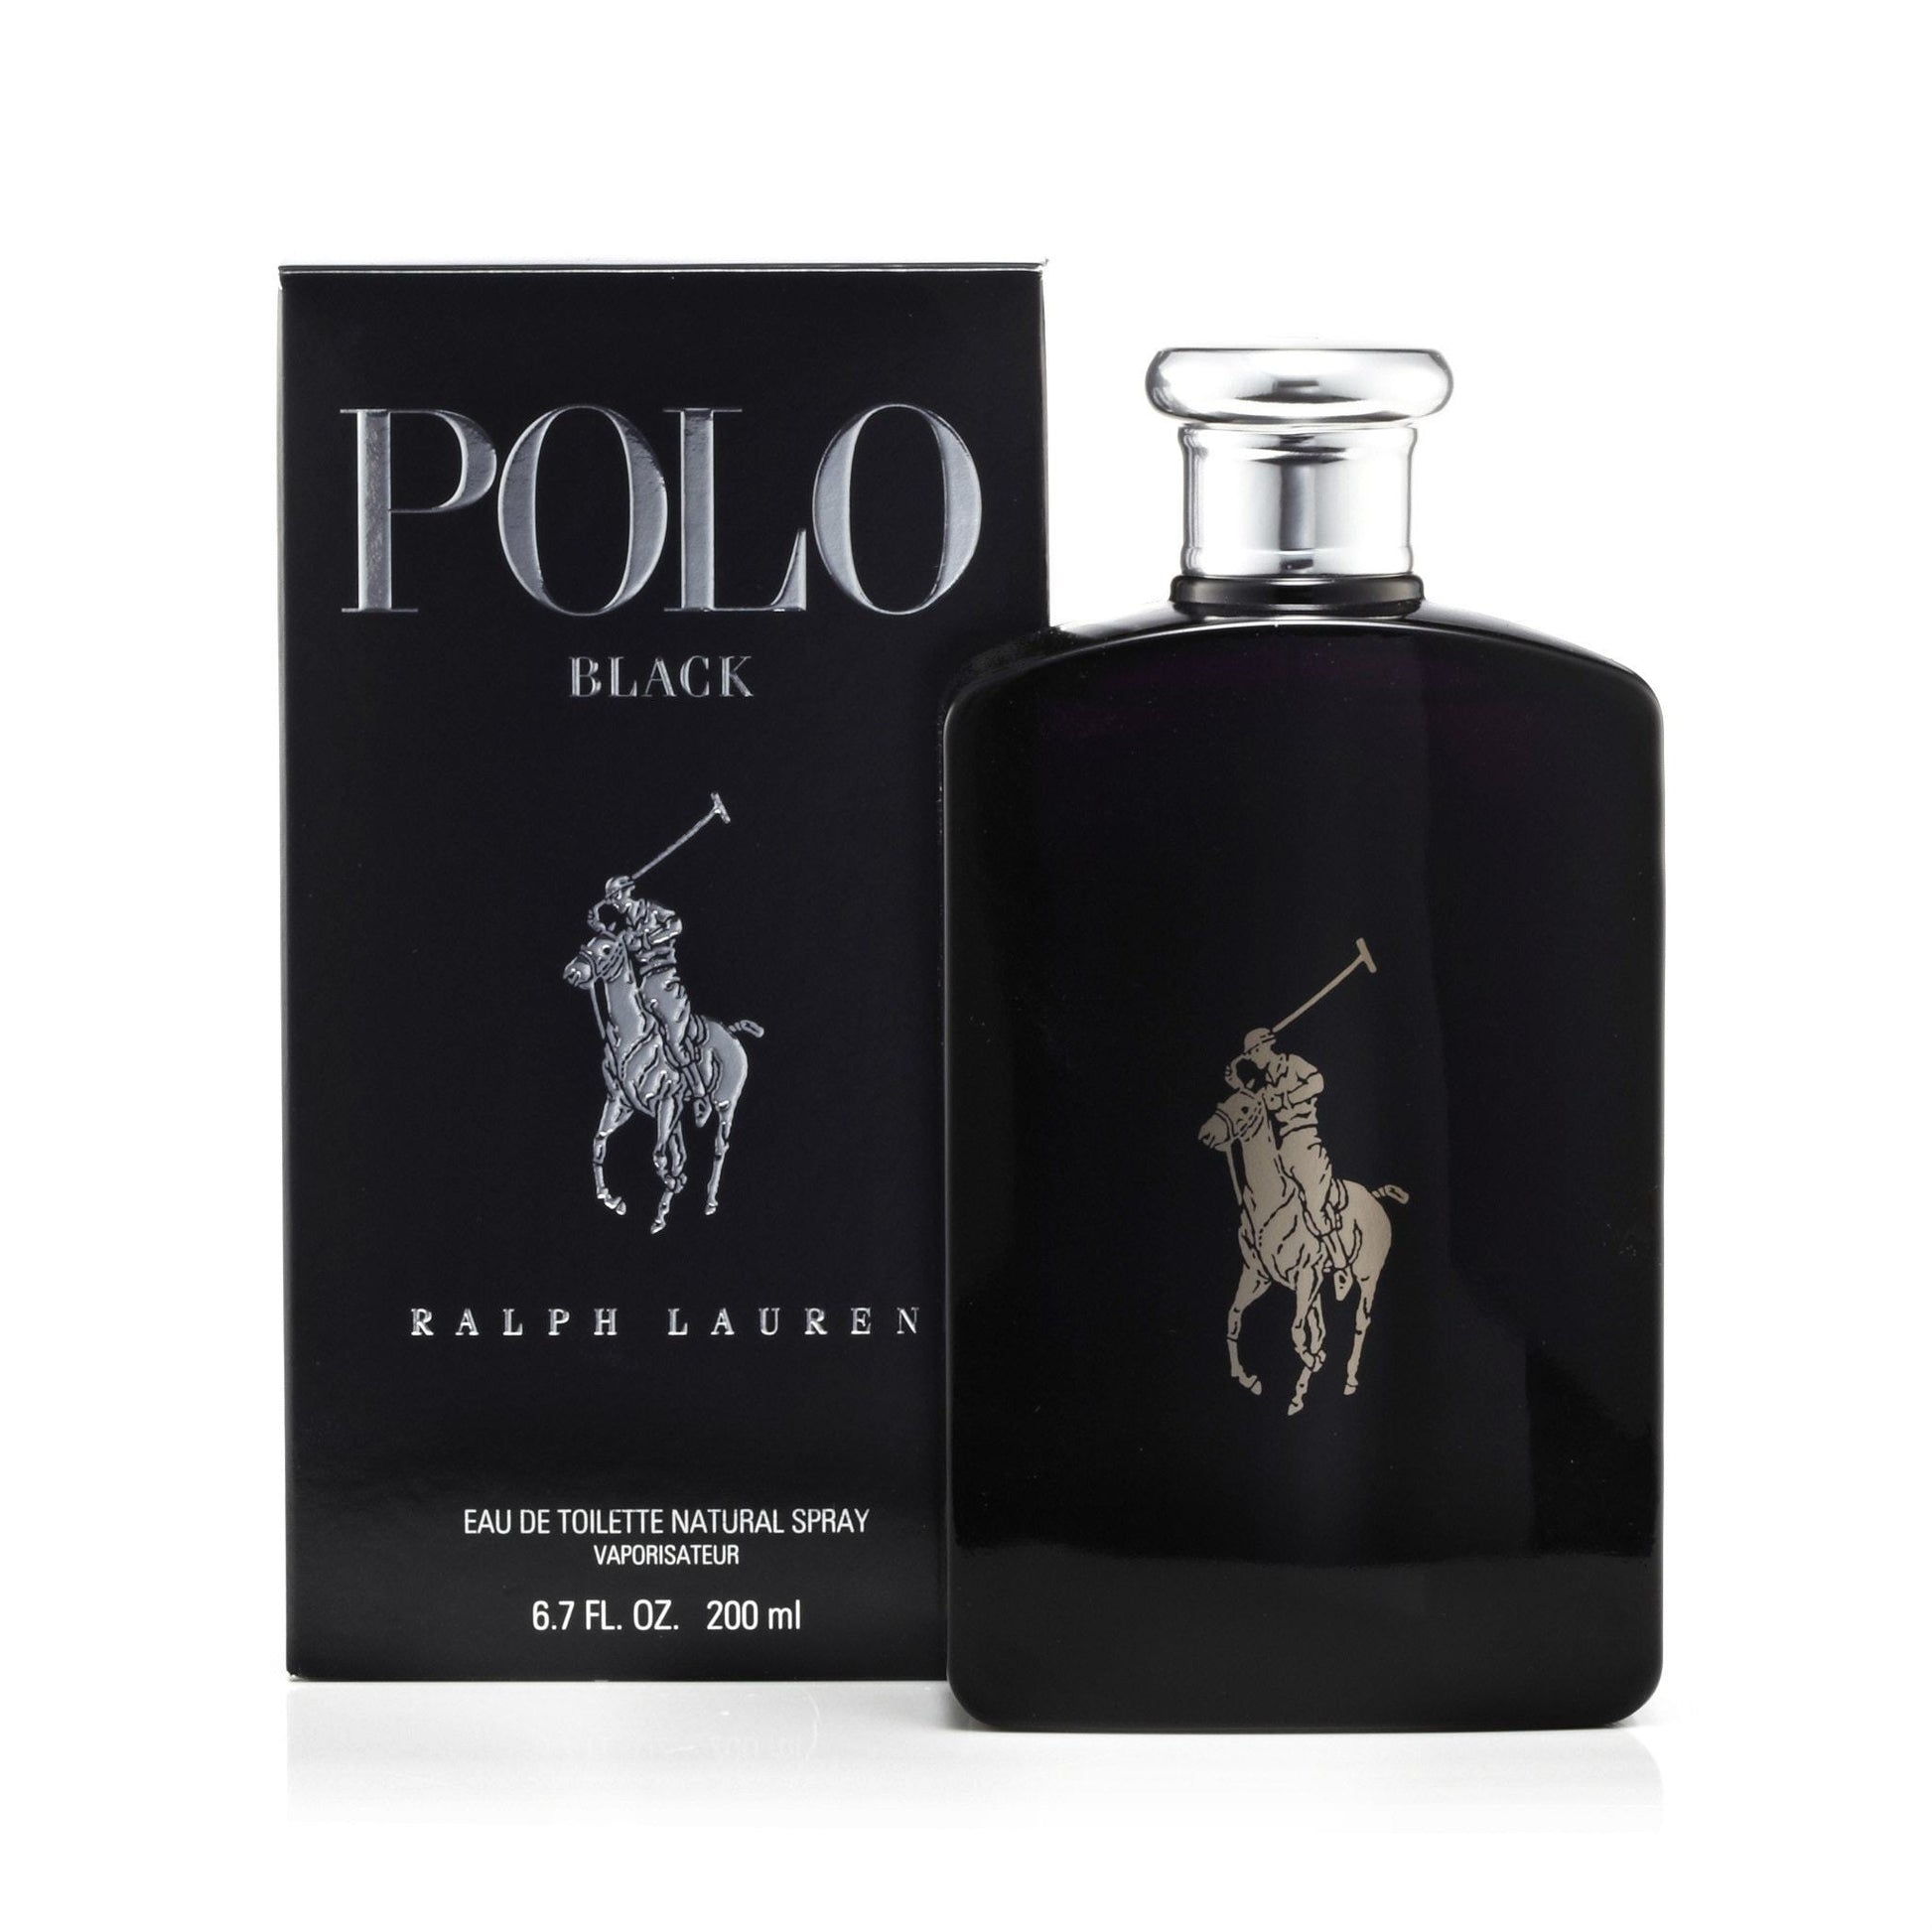 Polo Black Eau de Toilette Spray for Men by Ralph Lauren, Product image 1